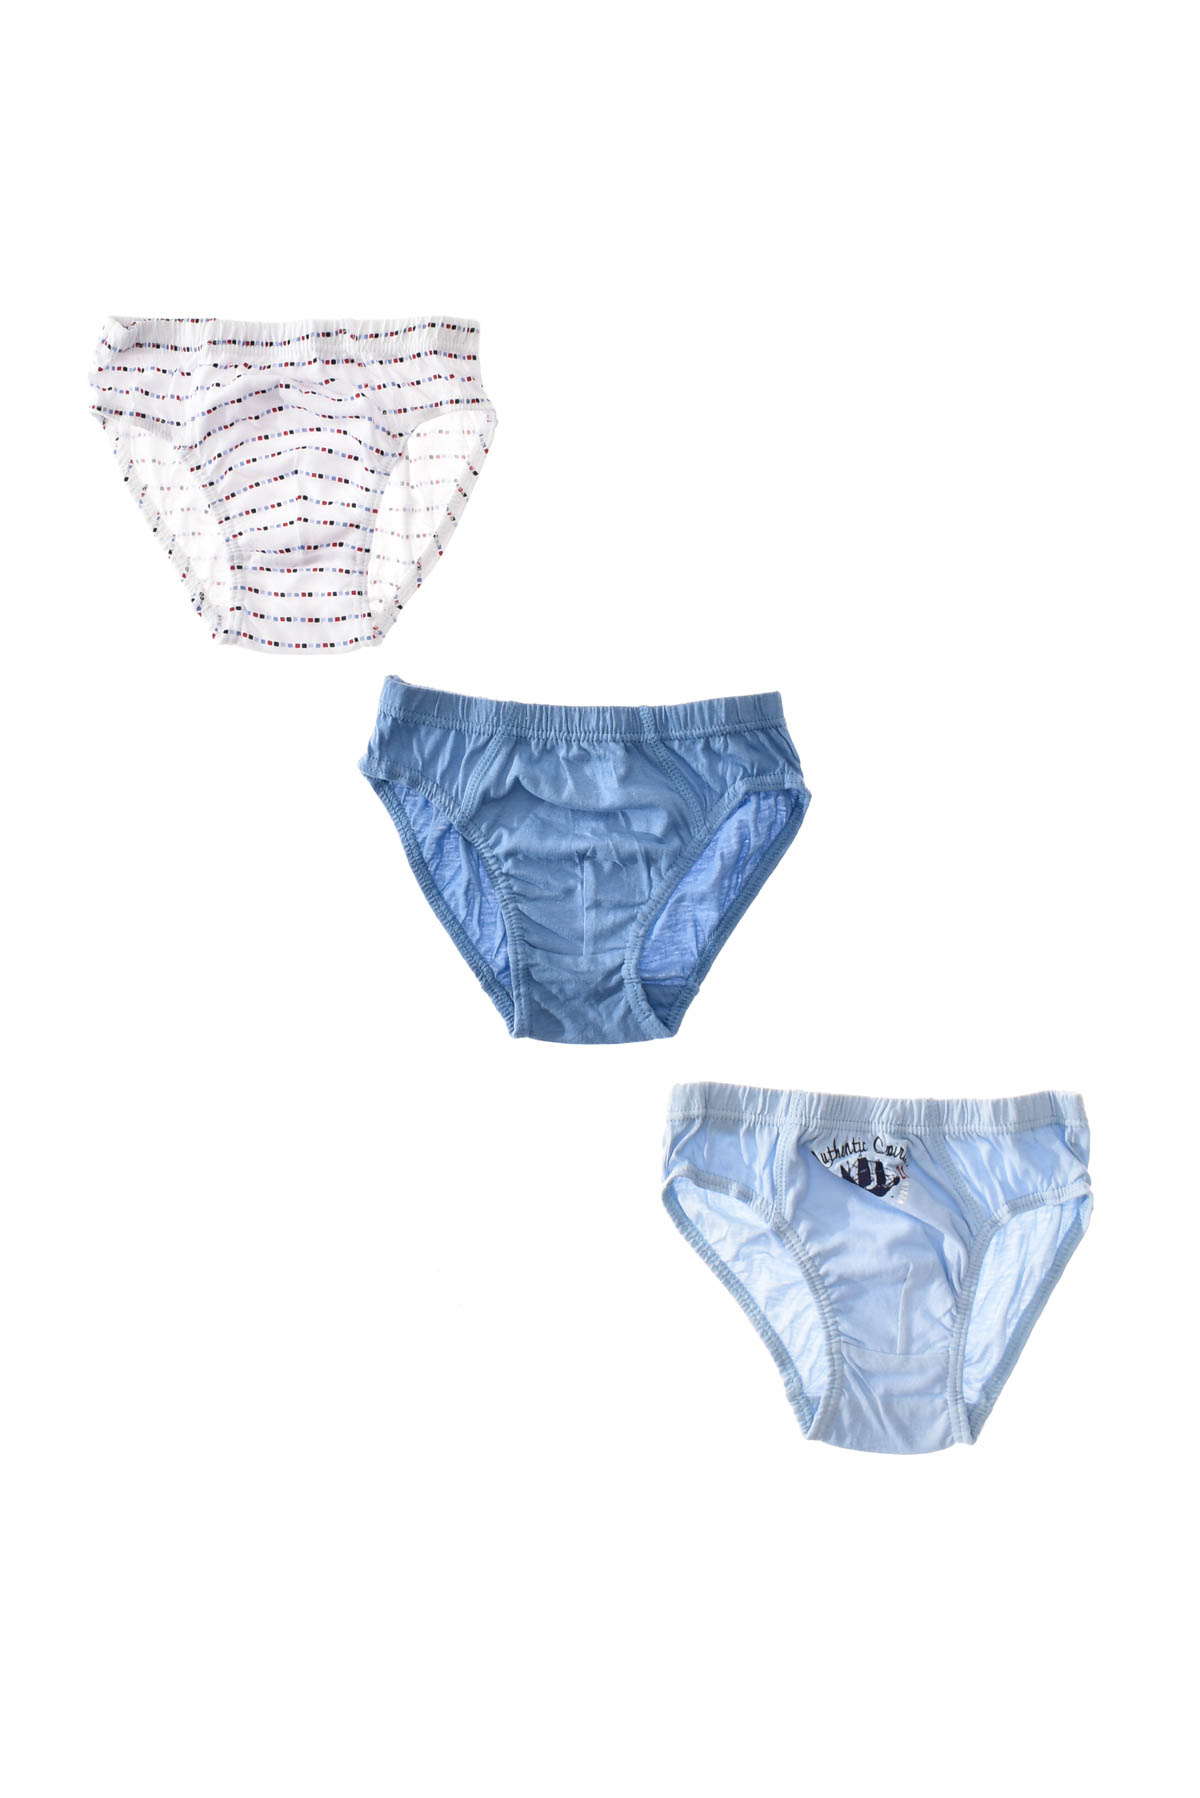 Briefs Underwear for Boy  3 pcs.- Yo! - 1